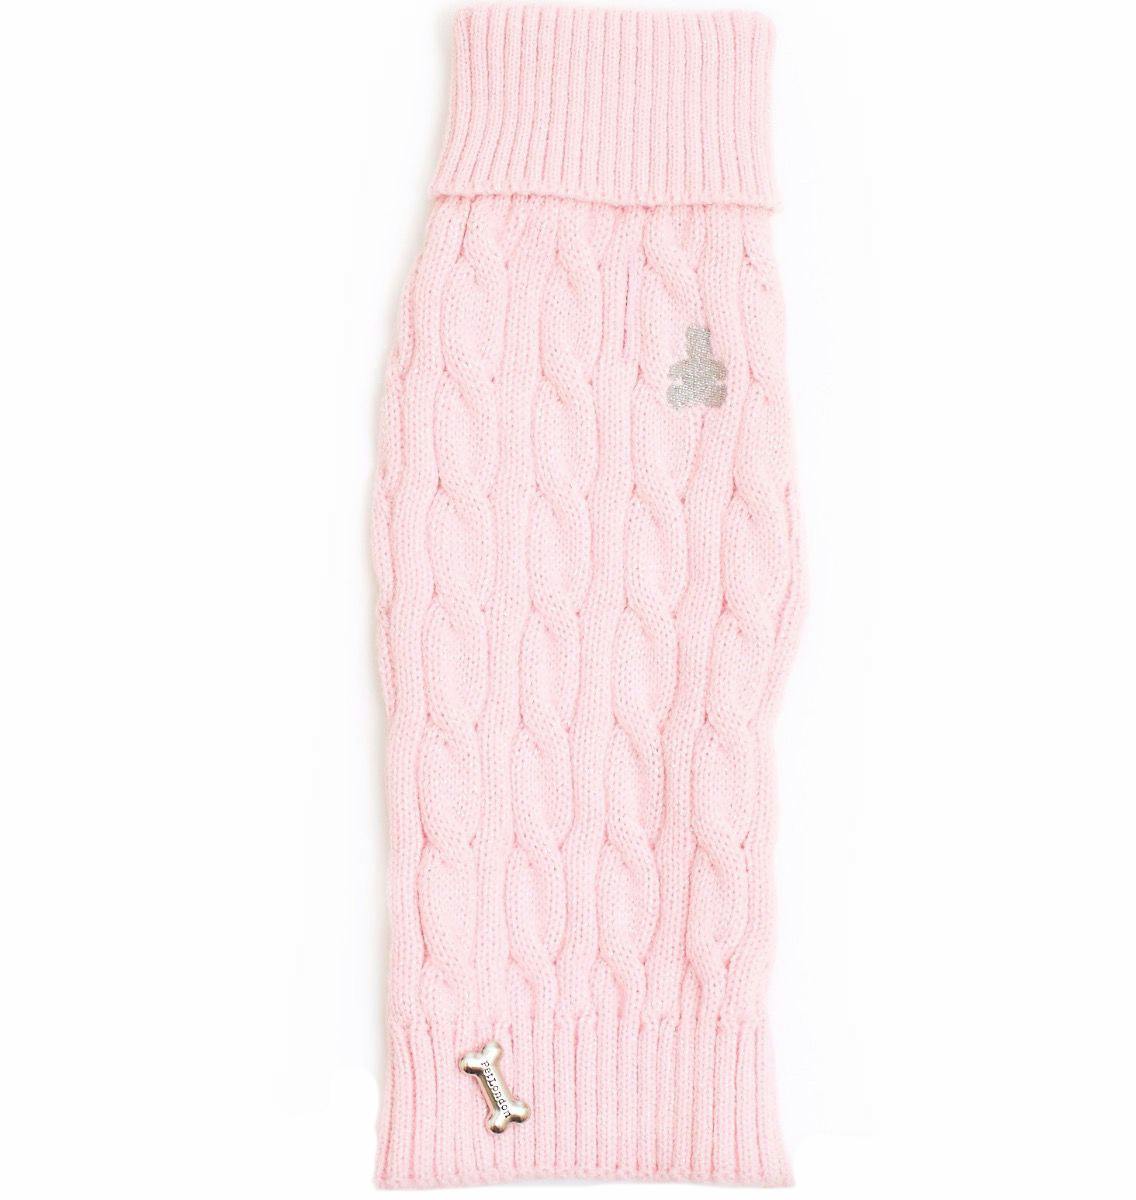 PetLondon Cable Knit Baby Pink - Stickad Hundtröja